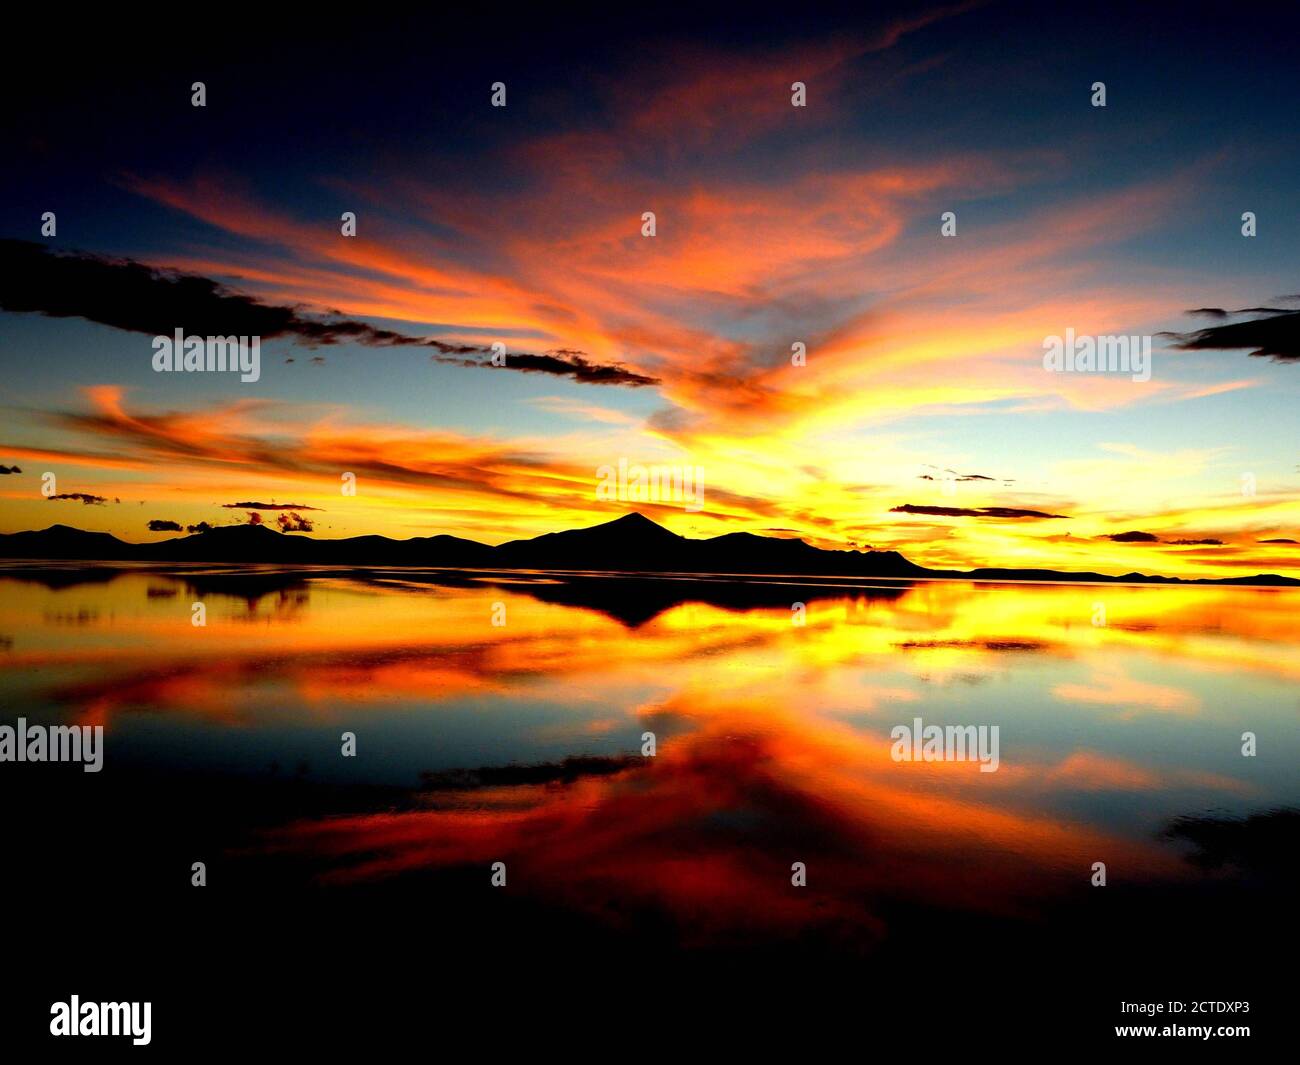 Wunderschöner Sonnenuntergang. Orangefarbener Sonnenuntergang. Spektakuläre Himmel Wolken Reflexion im Salzsee Wasser. Farbiger Himmel.surreale Wüstenlandschaft.Salar de Uyuni, Bolivien Stockfoto